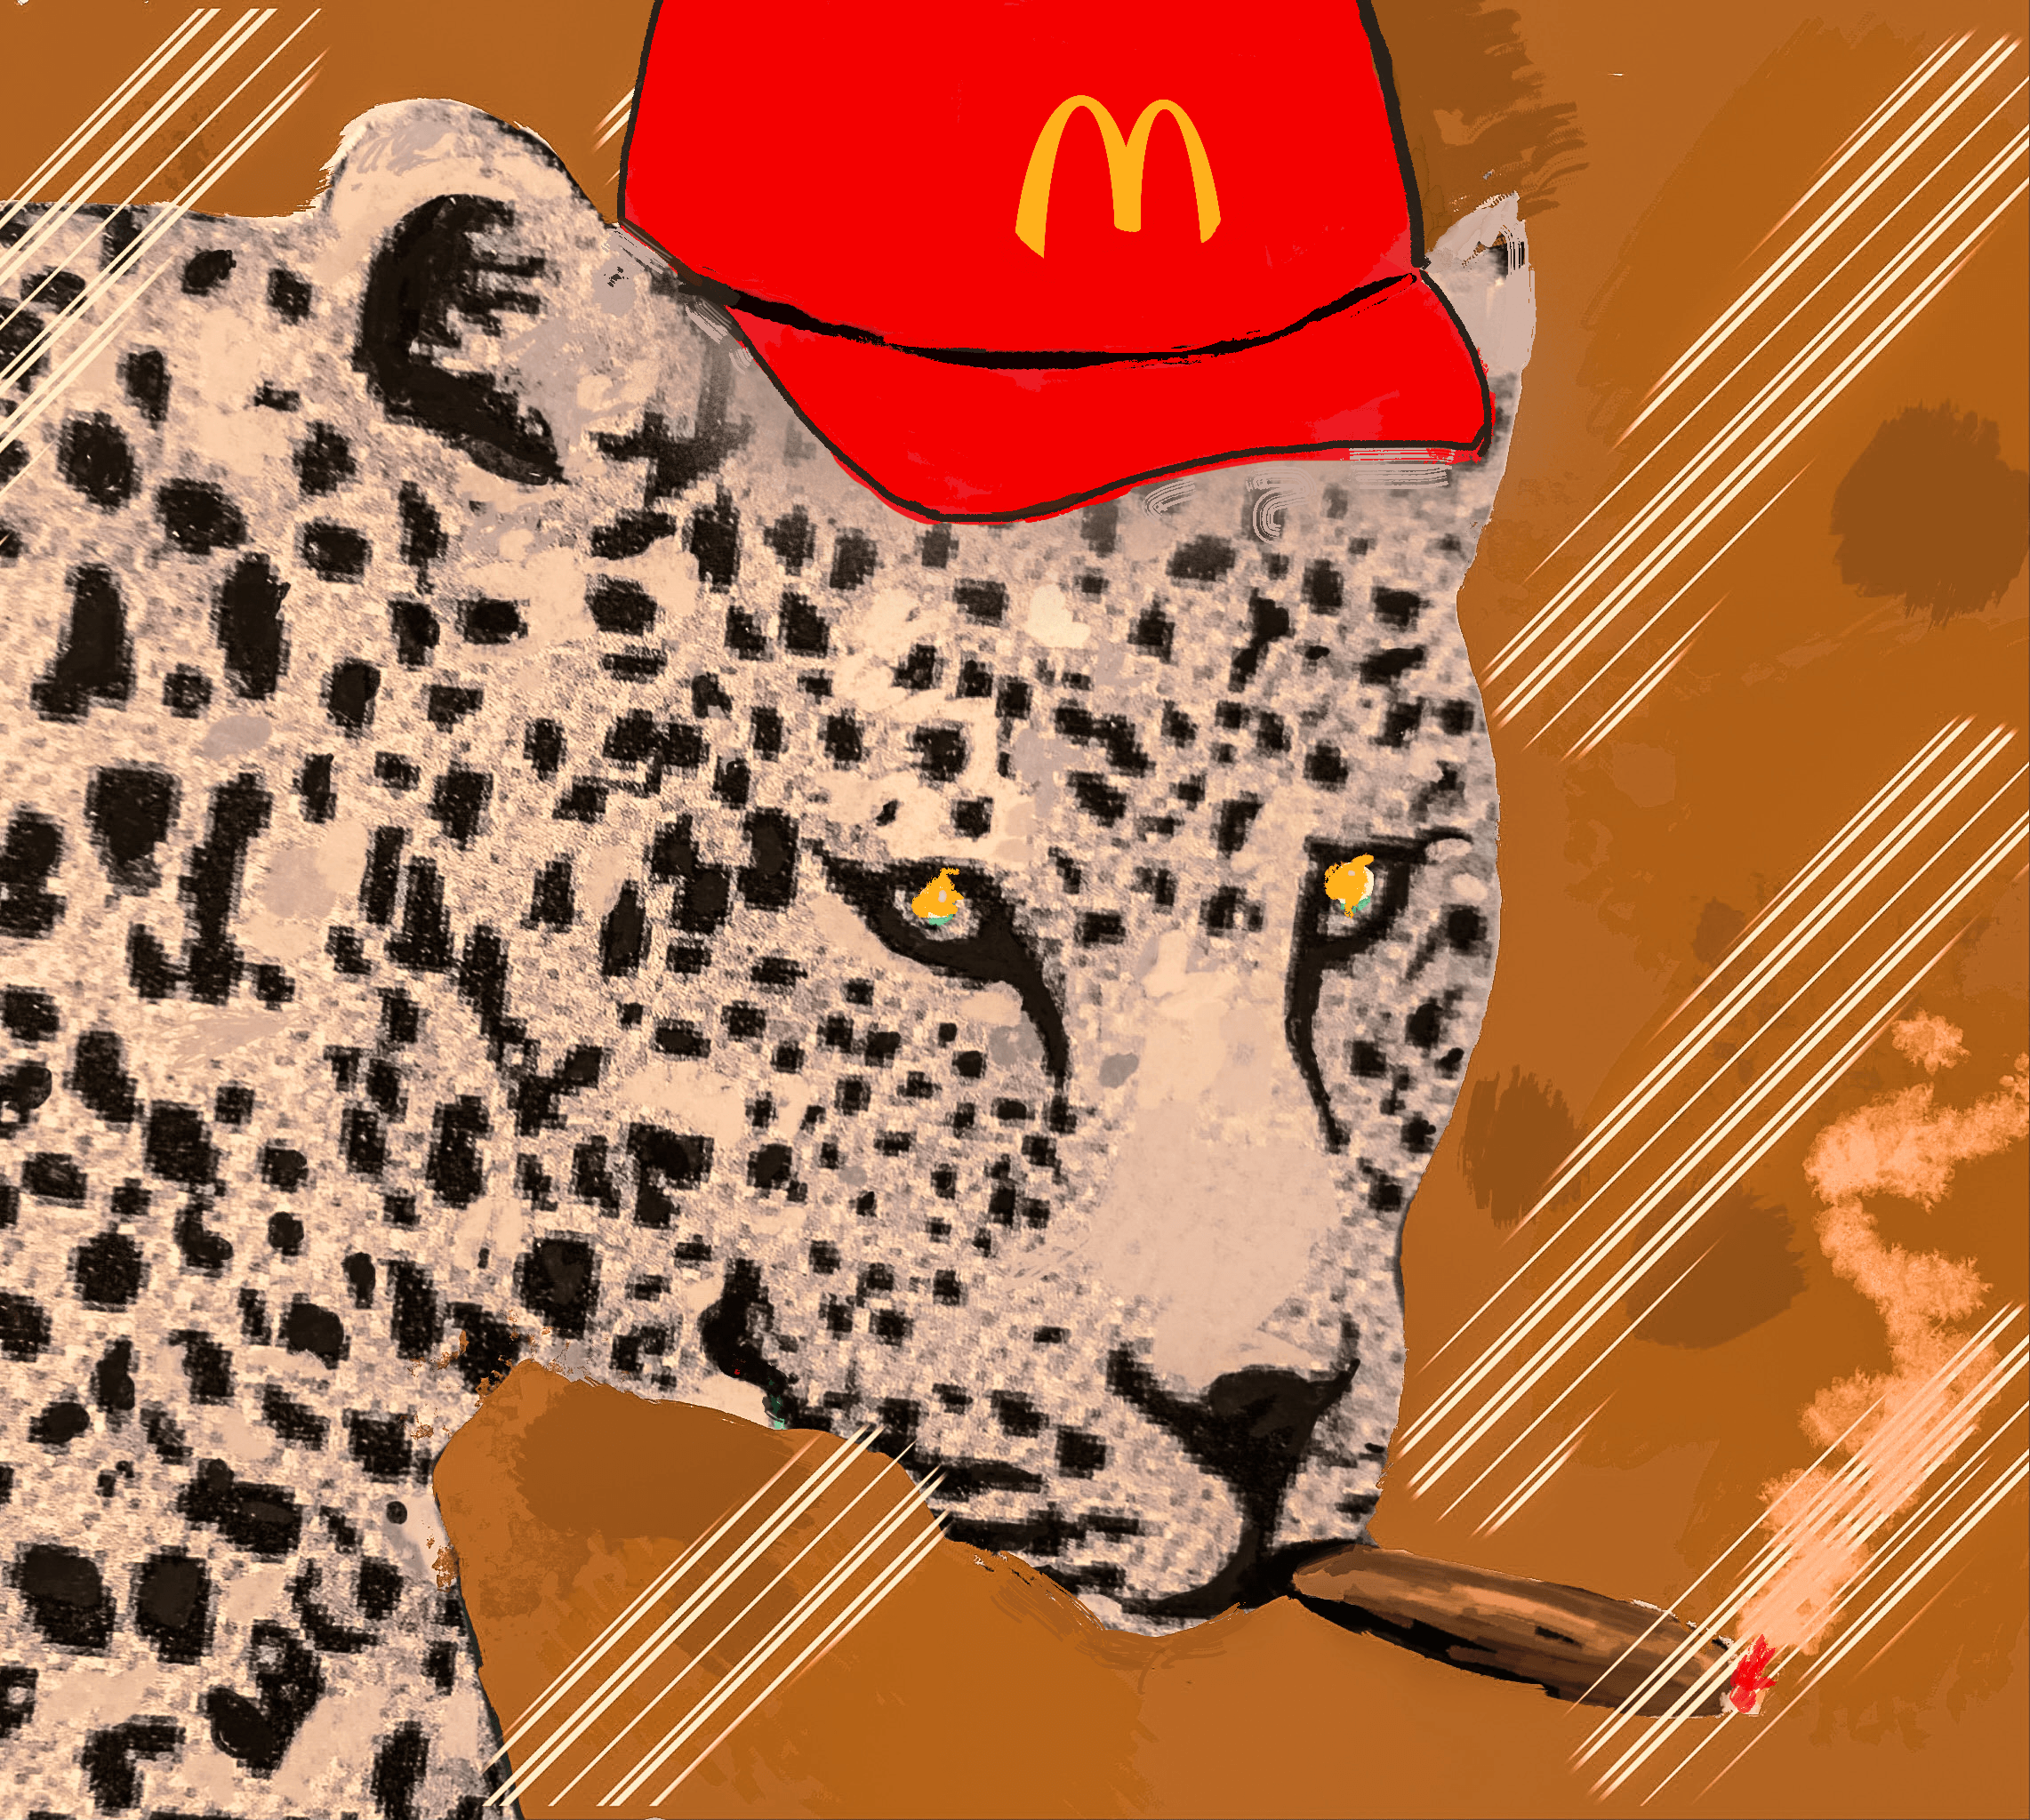 Leopard wearing McDonald's hat